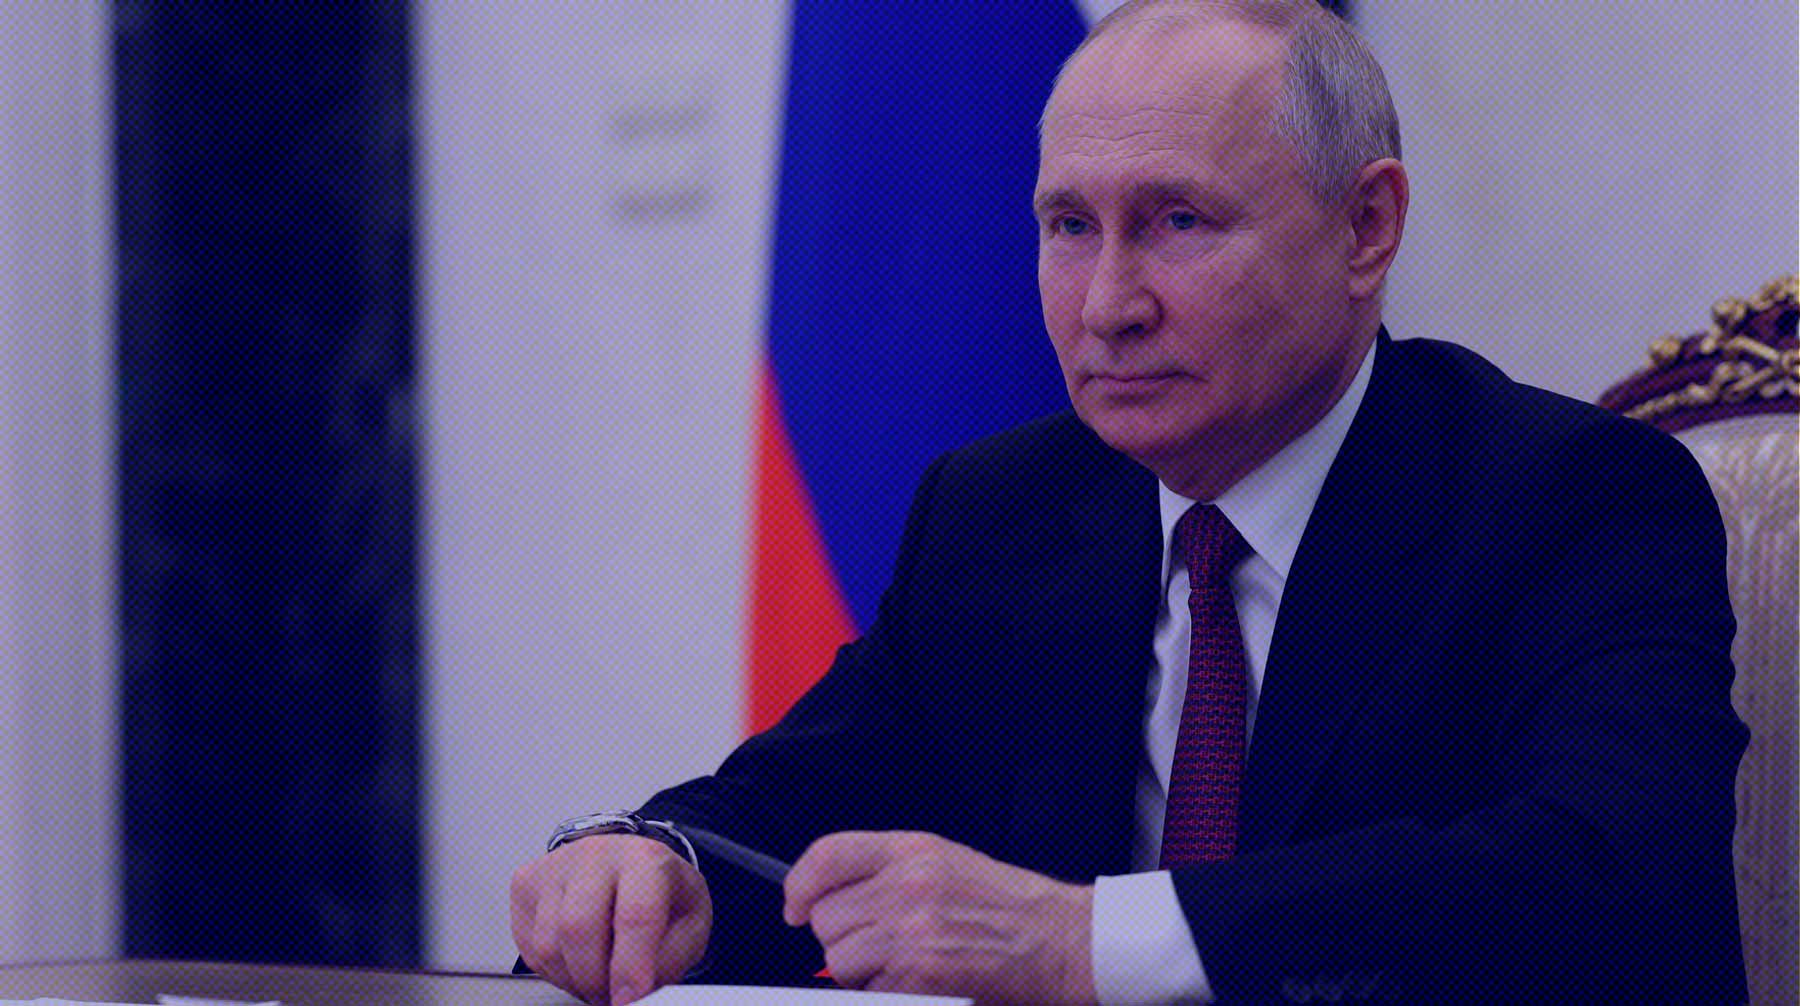 Сейчас документ готовится, сказал представитель Кремля undefined